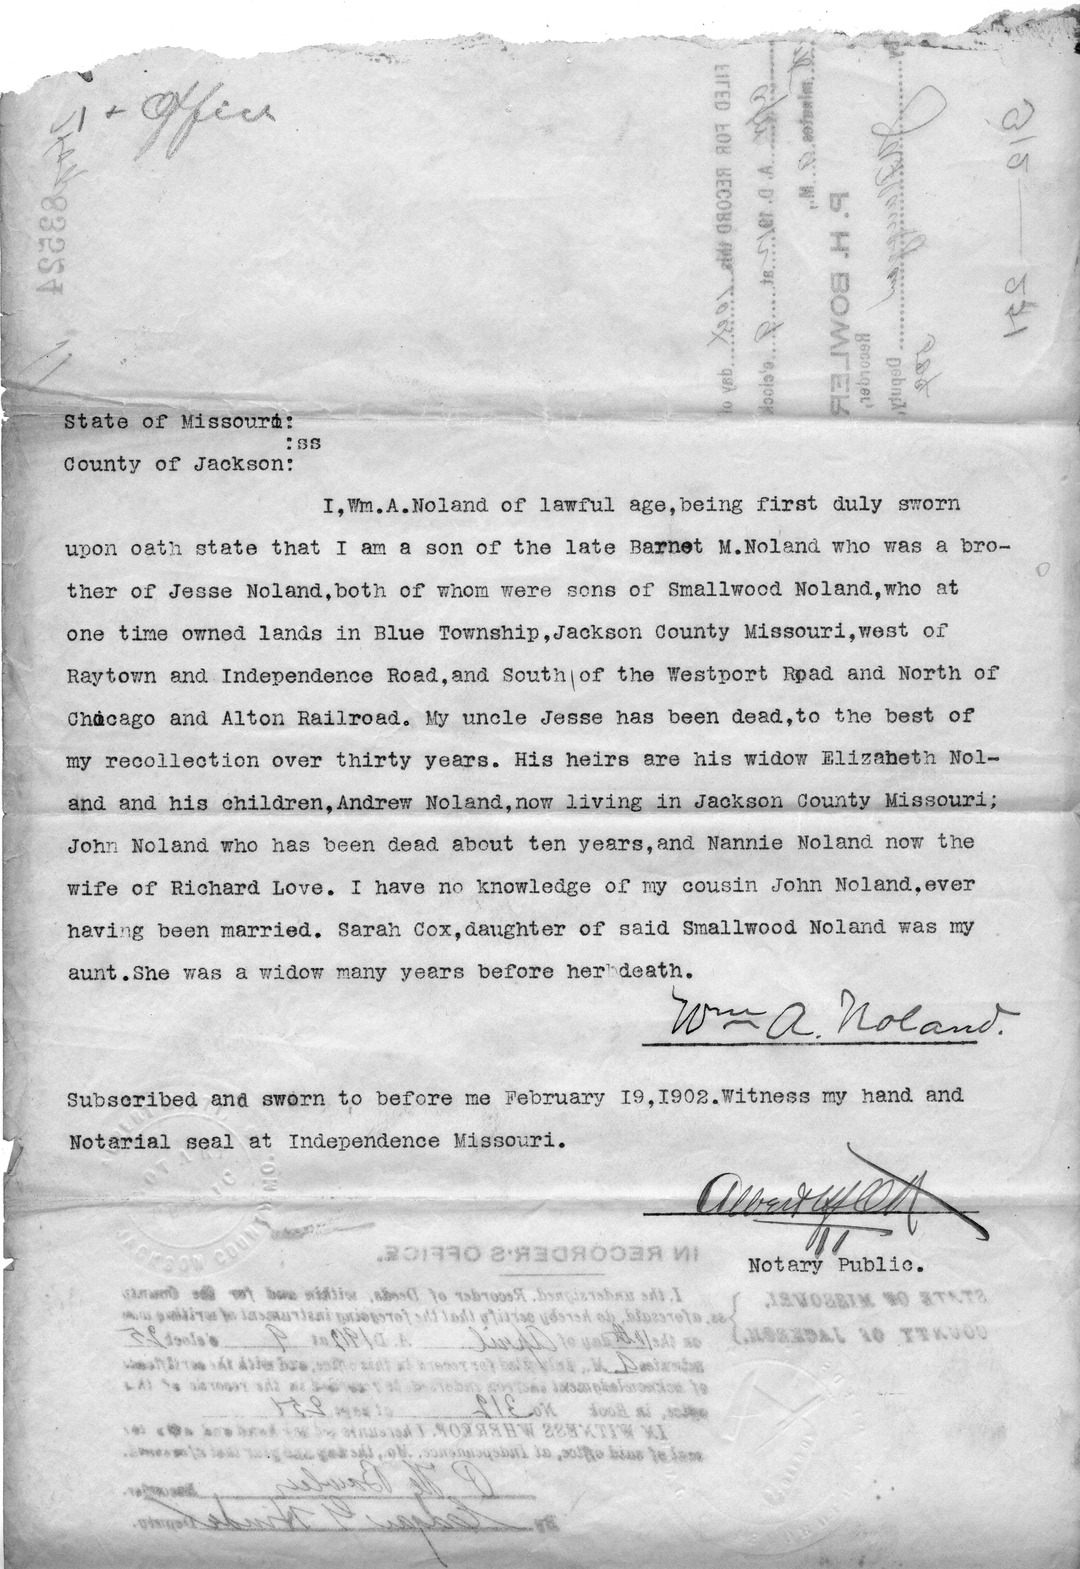 Affidavit of William A. Noland